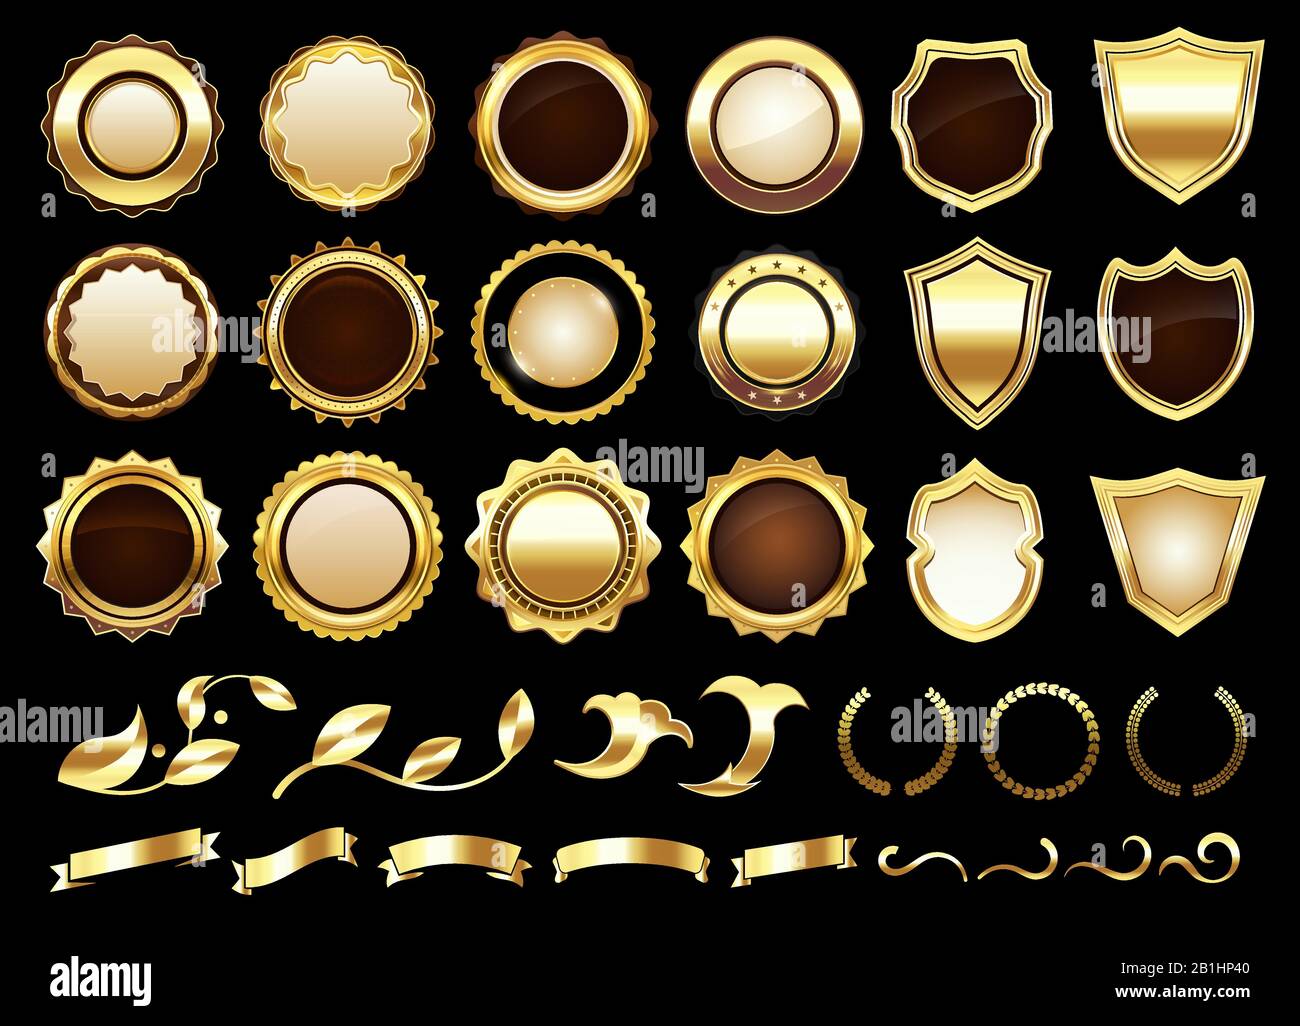 Elegant golden labels. Shields badges, gold ornamental scrolls amd retro label vector illustration set Stock Vector